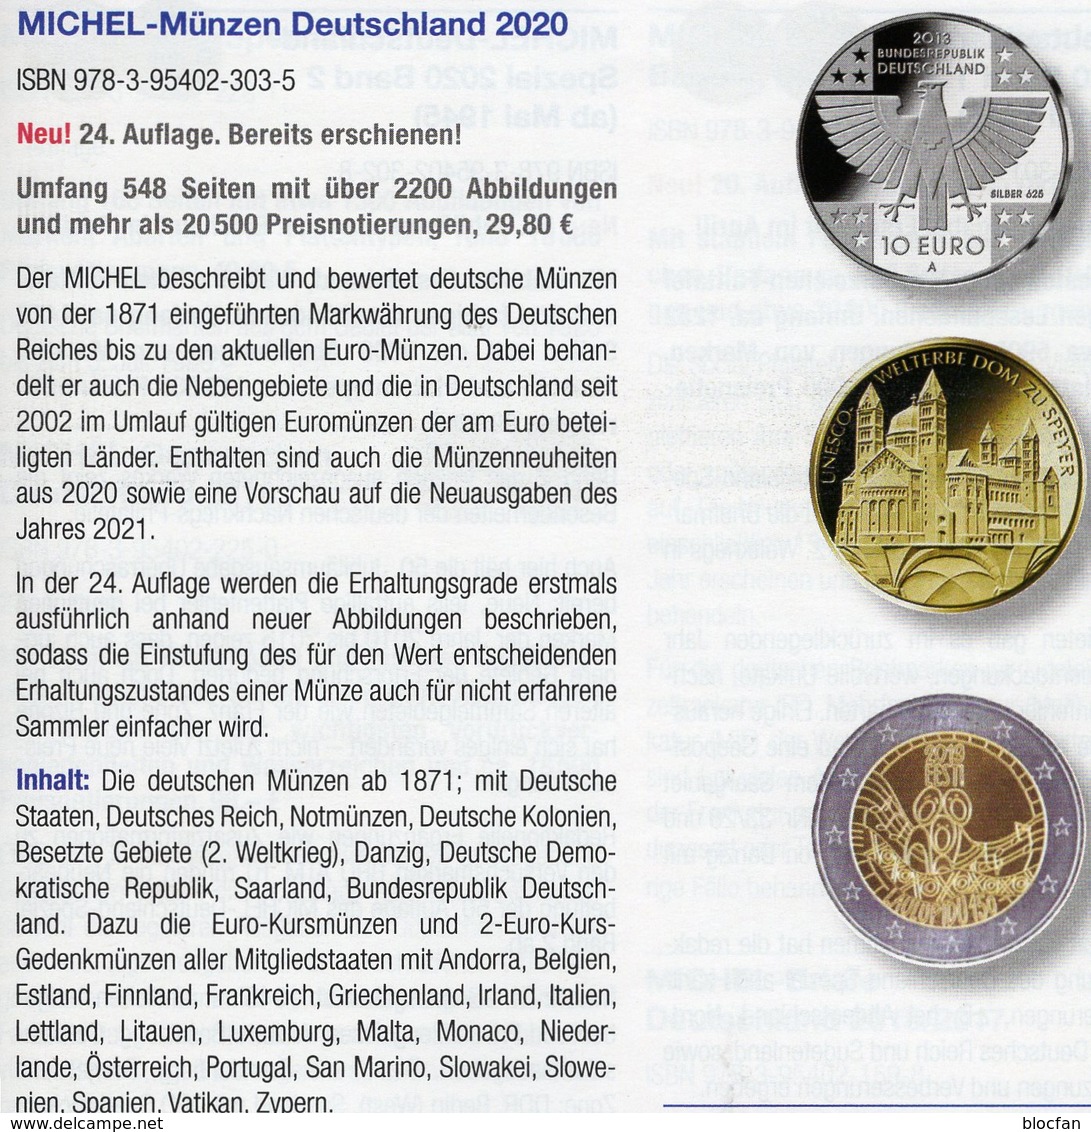 Deutschland+EURO MICHEL Münzen 2020 Neu 30€ Ab 1871 DR 3.Reich BRD DDR Numismatik Coins Catalogue 978-3-95402-303-5 - Collections